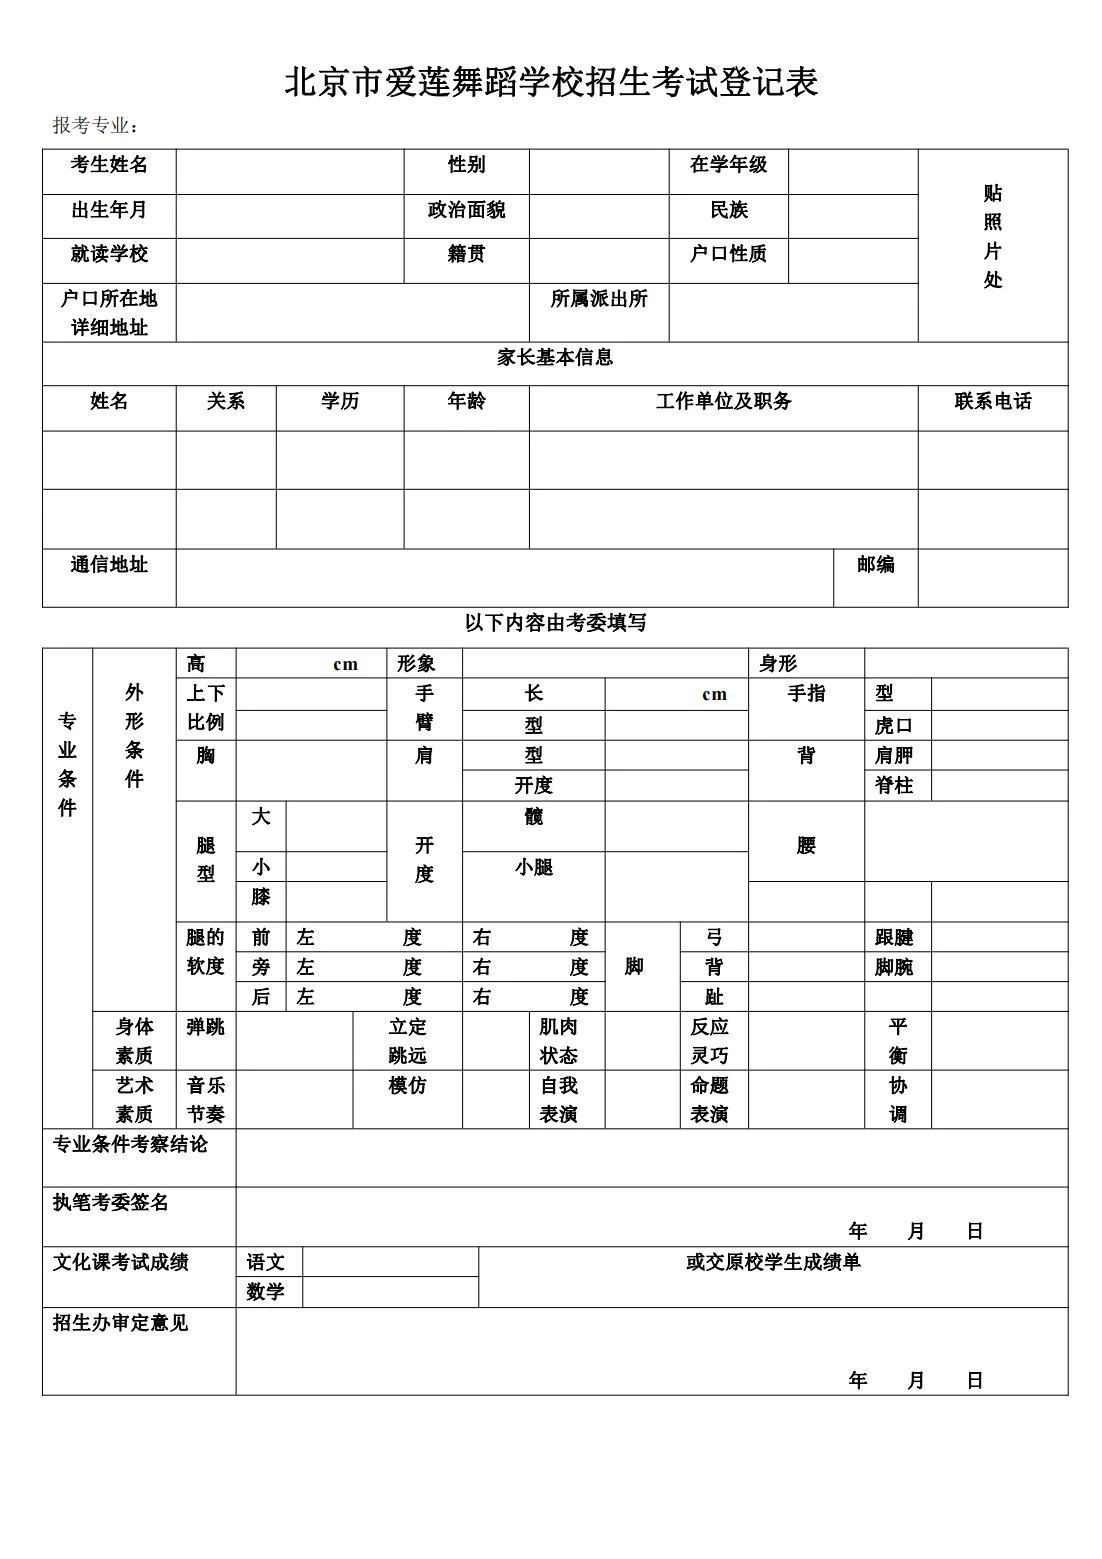 北京市爱莲舞蹈学校招生考试登记表